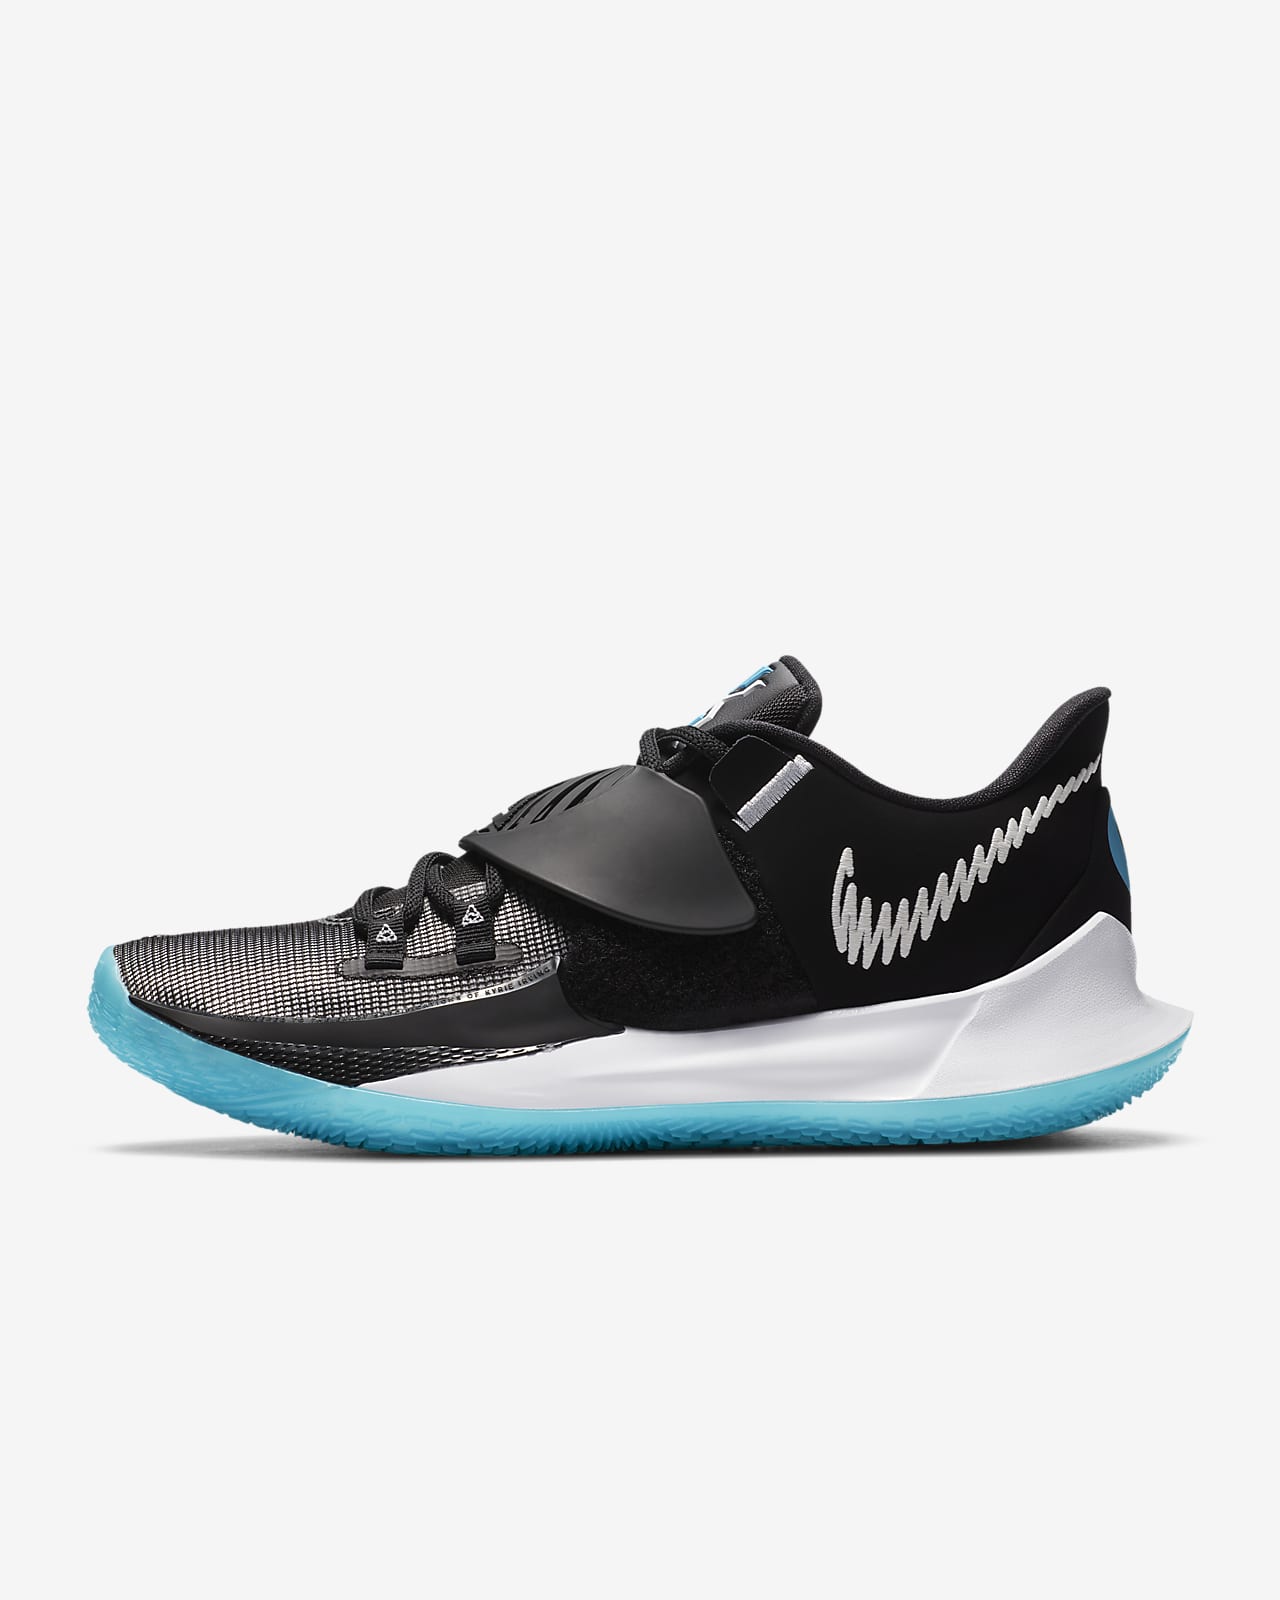 Kyrie Low 3 'Moon' Basketball Shoe. Nike LU